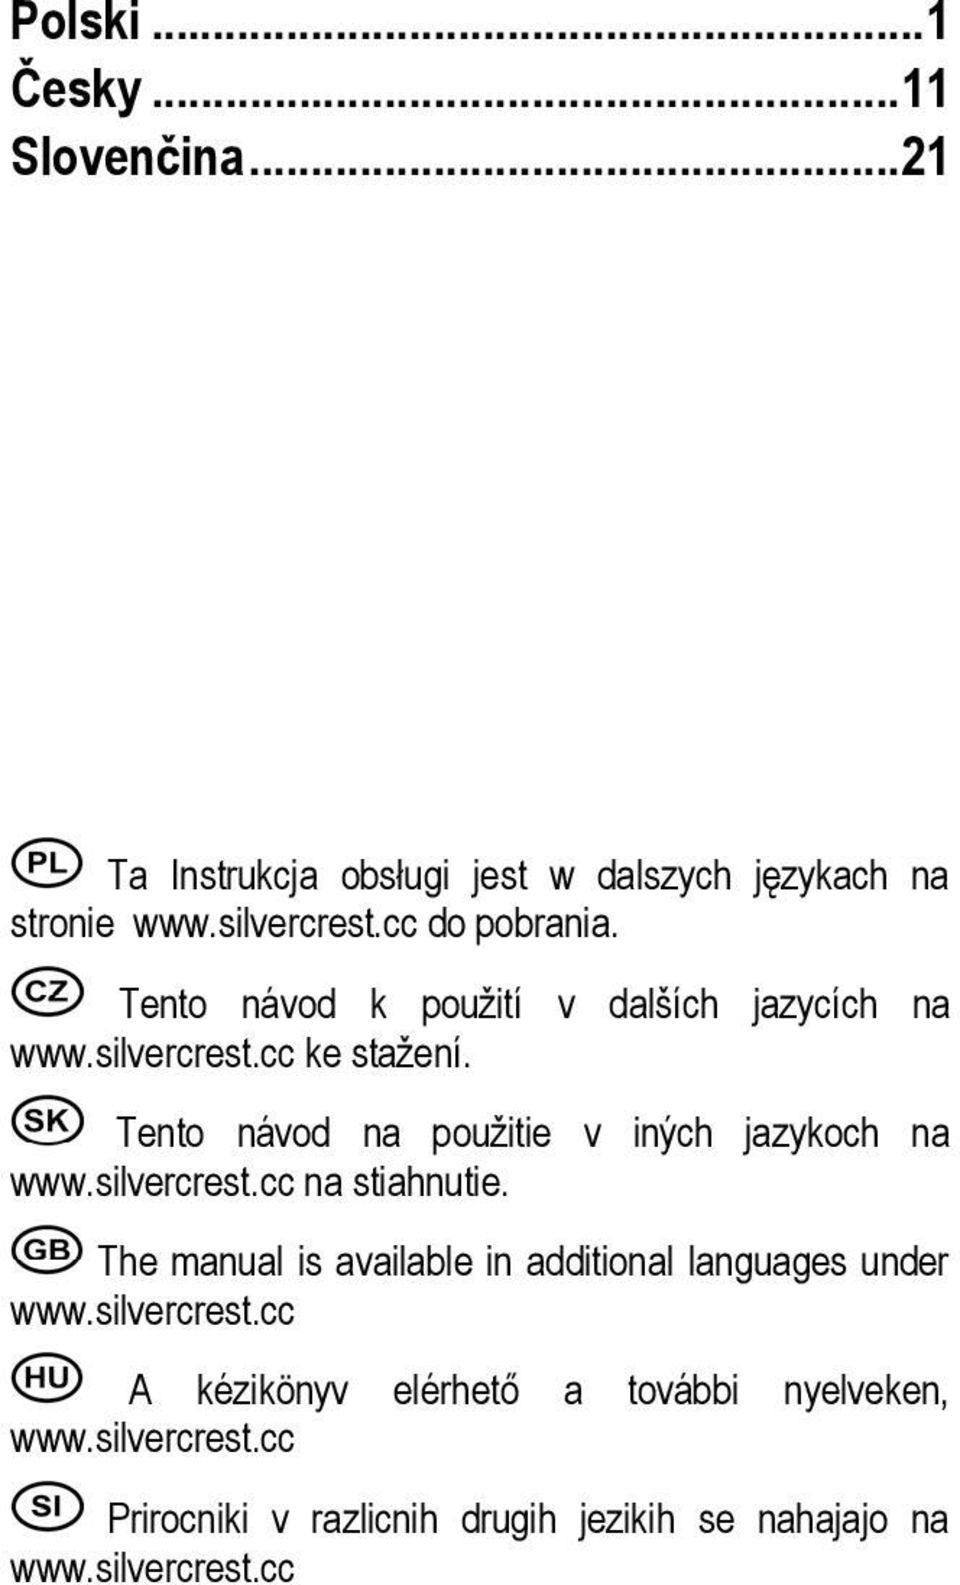 Tento návod na použitie v iných jazykoch na www.silvercrest.cc na stiahnutie.